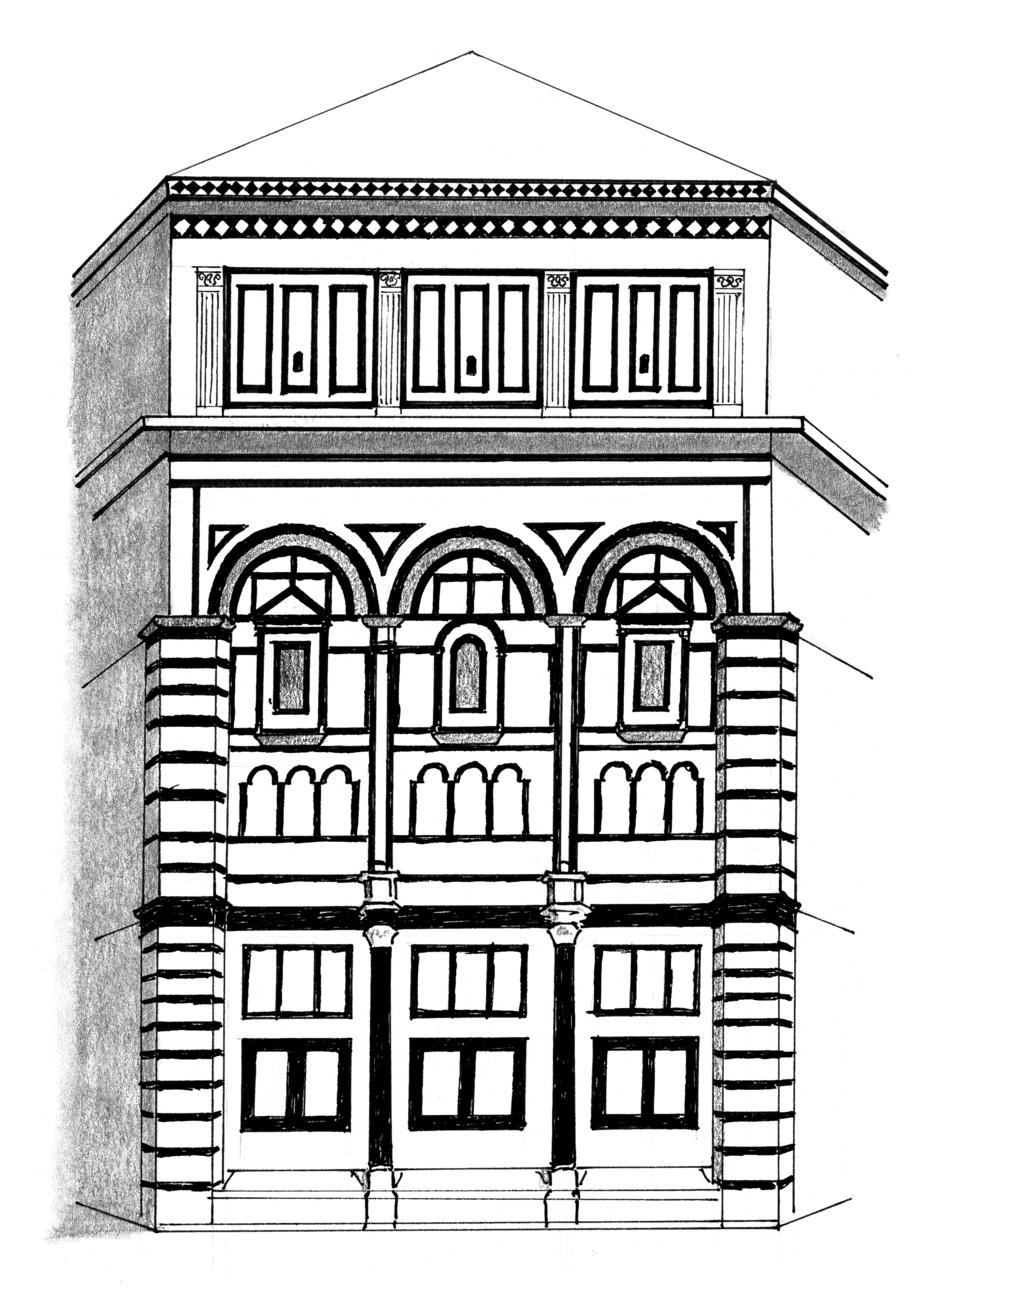 Middeleeuws gebouw: sacristie van Florence STAP 2 In de volgende stap teken je het gebouw schematischer om